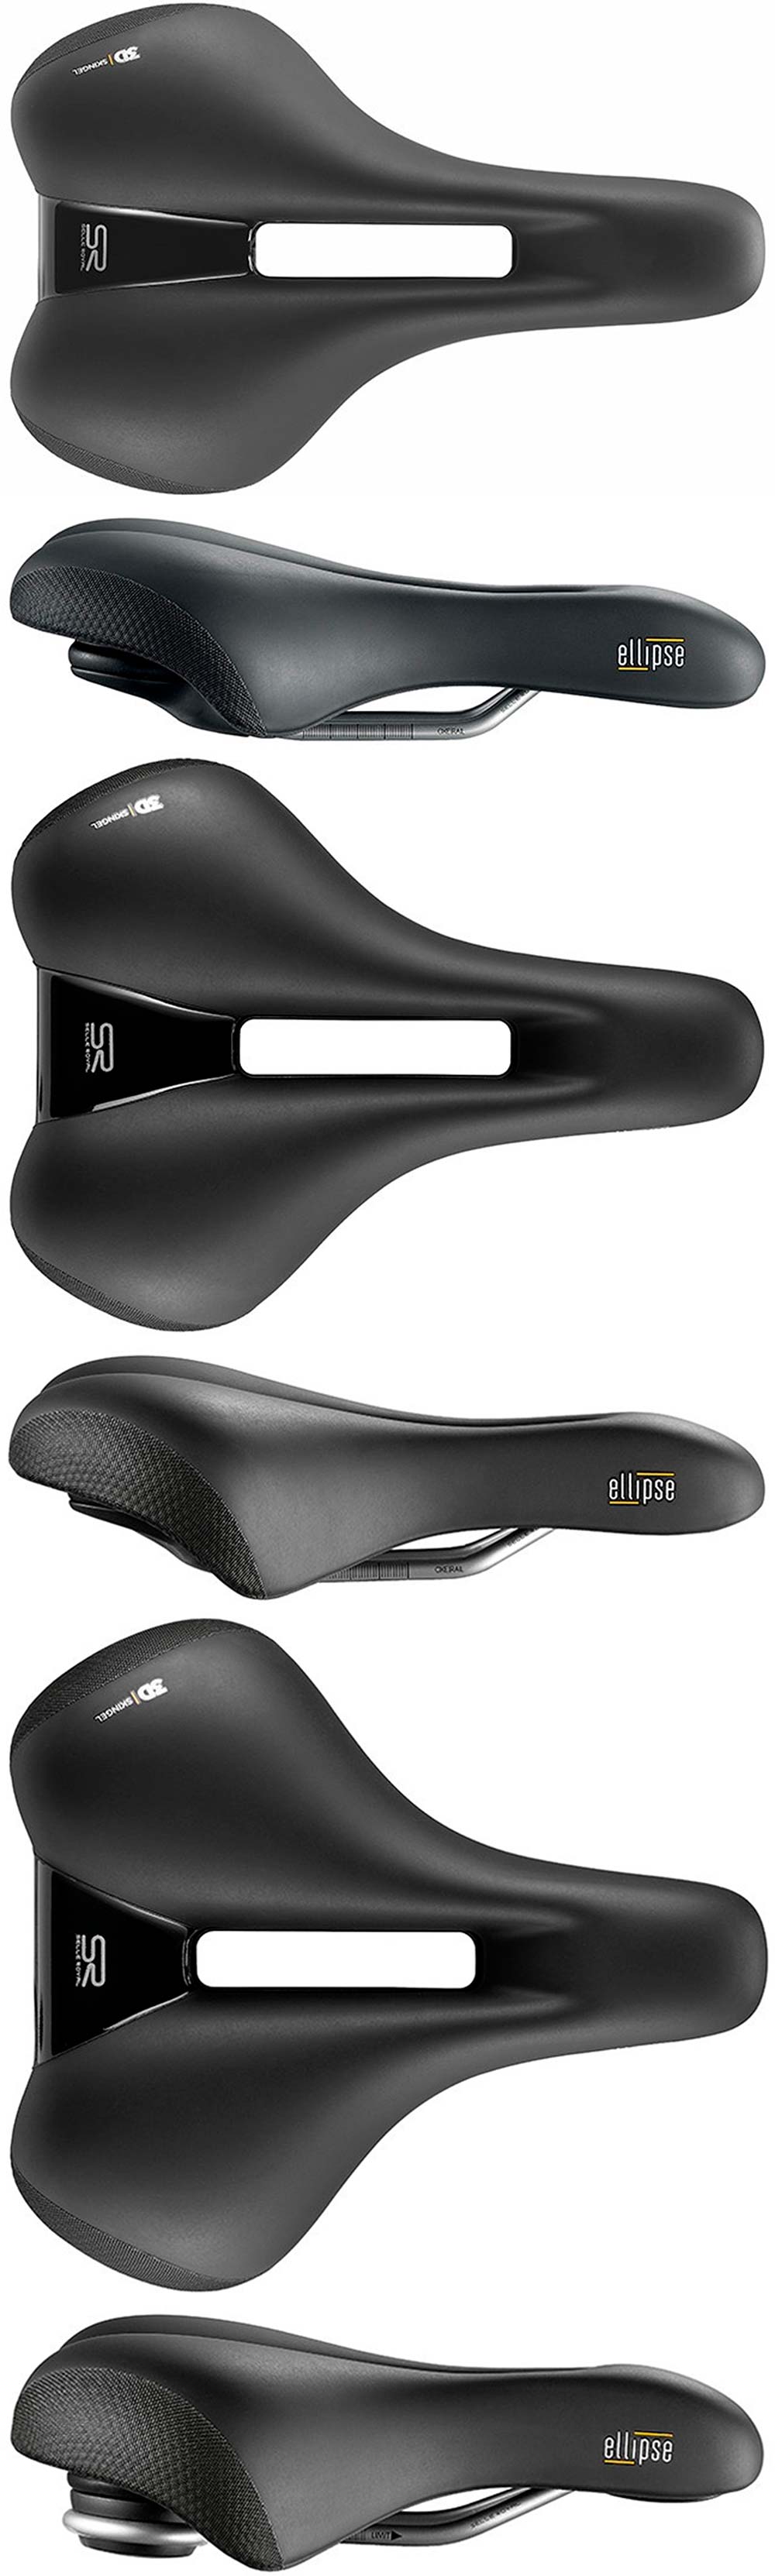 En TodoMountainBike: Selle Royal presenta la gama de sillines Ellipse, diseñados para ciclistas que buscan el máximo nivel de confort